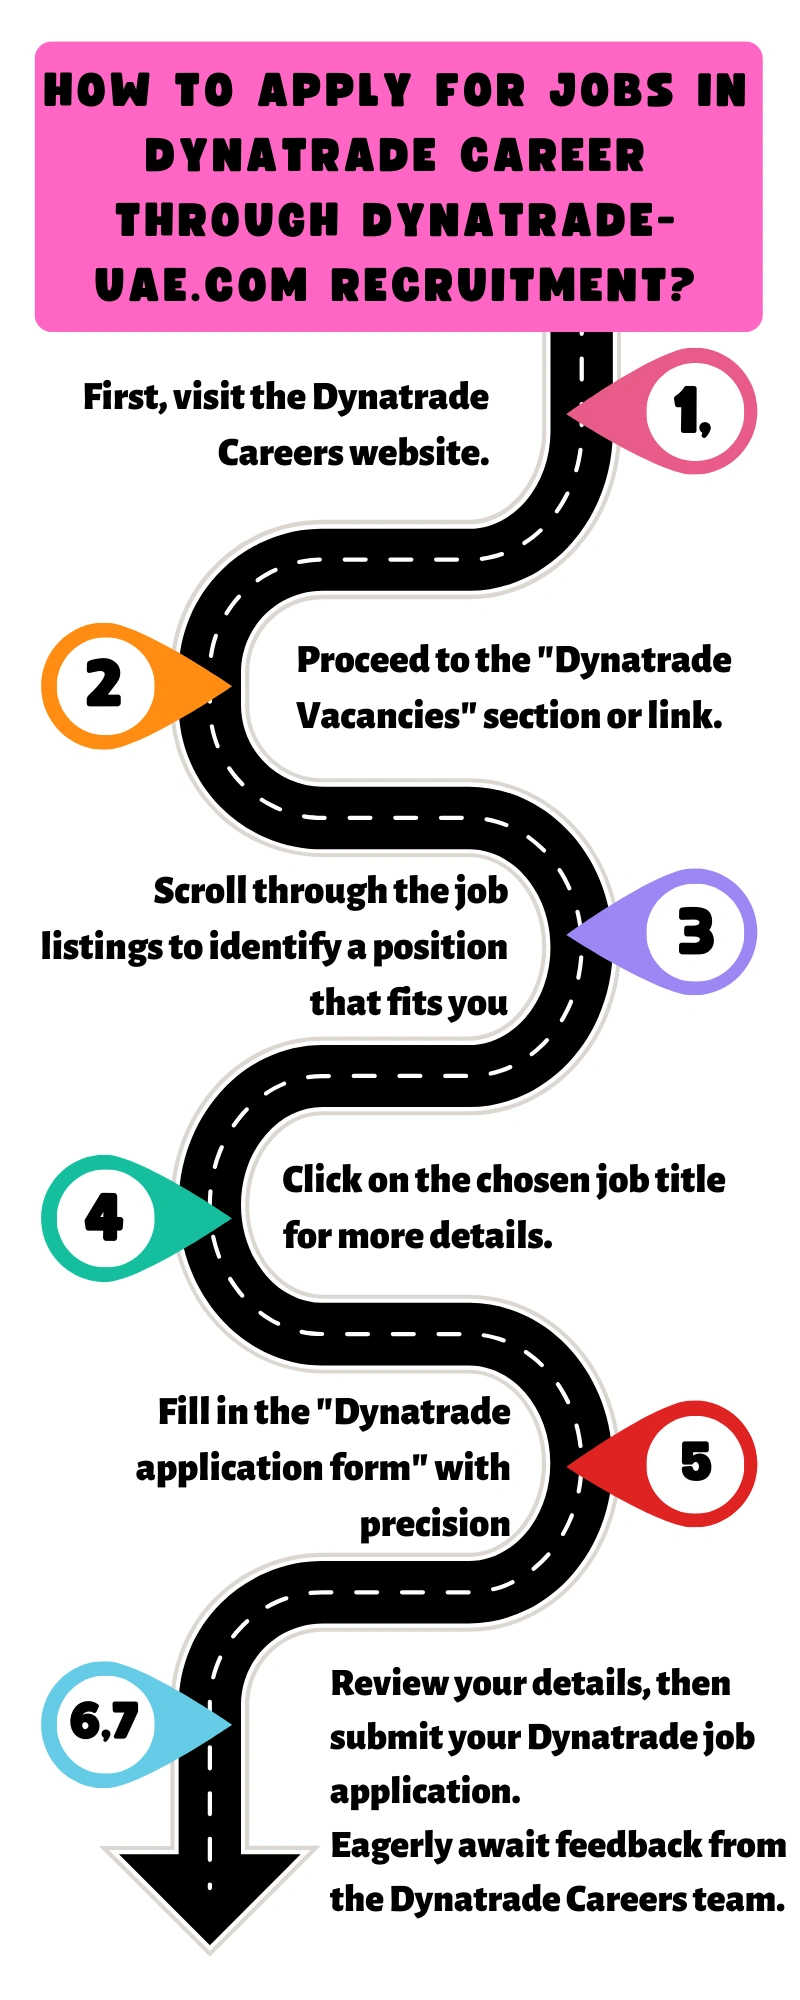 How to Apply for Jobs in Dynatrade Career through dynatrade-uae.com recruitment?